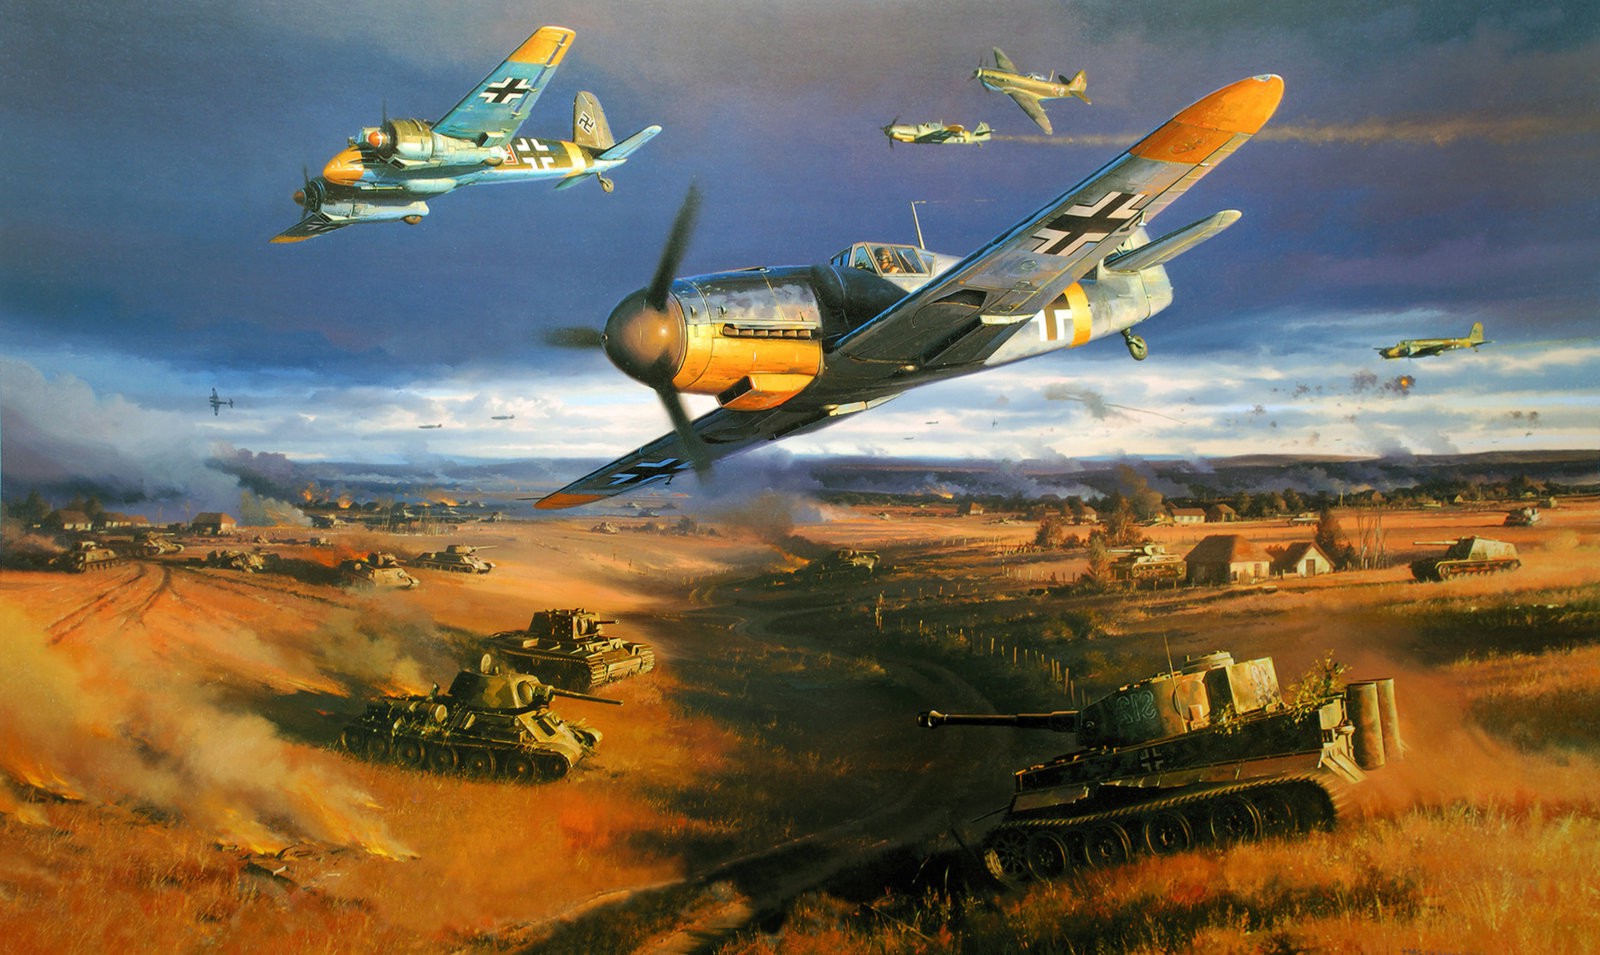 Messerschmitt, Messerschmitt Bf 109, World War II, Germany, Military, Military Aircraft, Luftwaffe Wallpaper